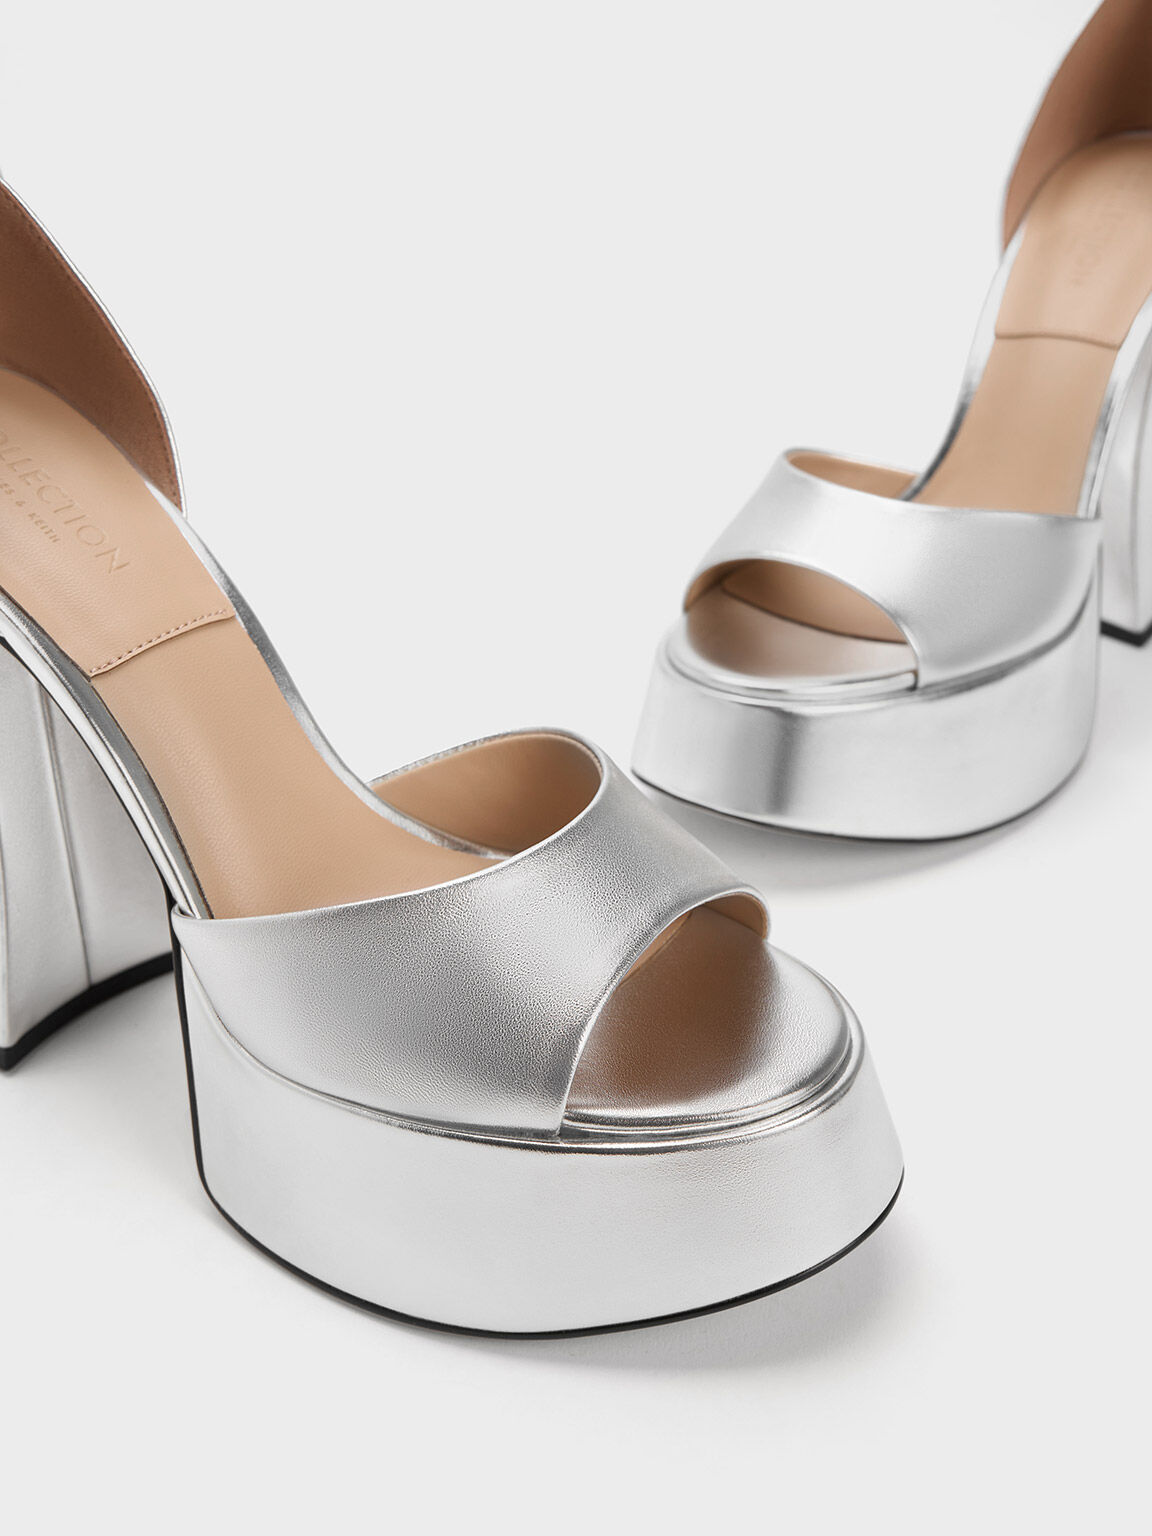 Silver High Heels - Rhinestone Heels - Ankle Strap Heels - Lulus